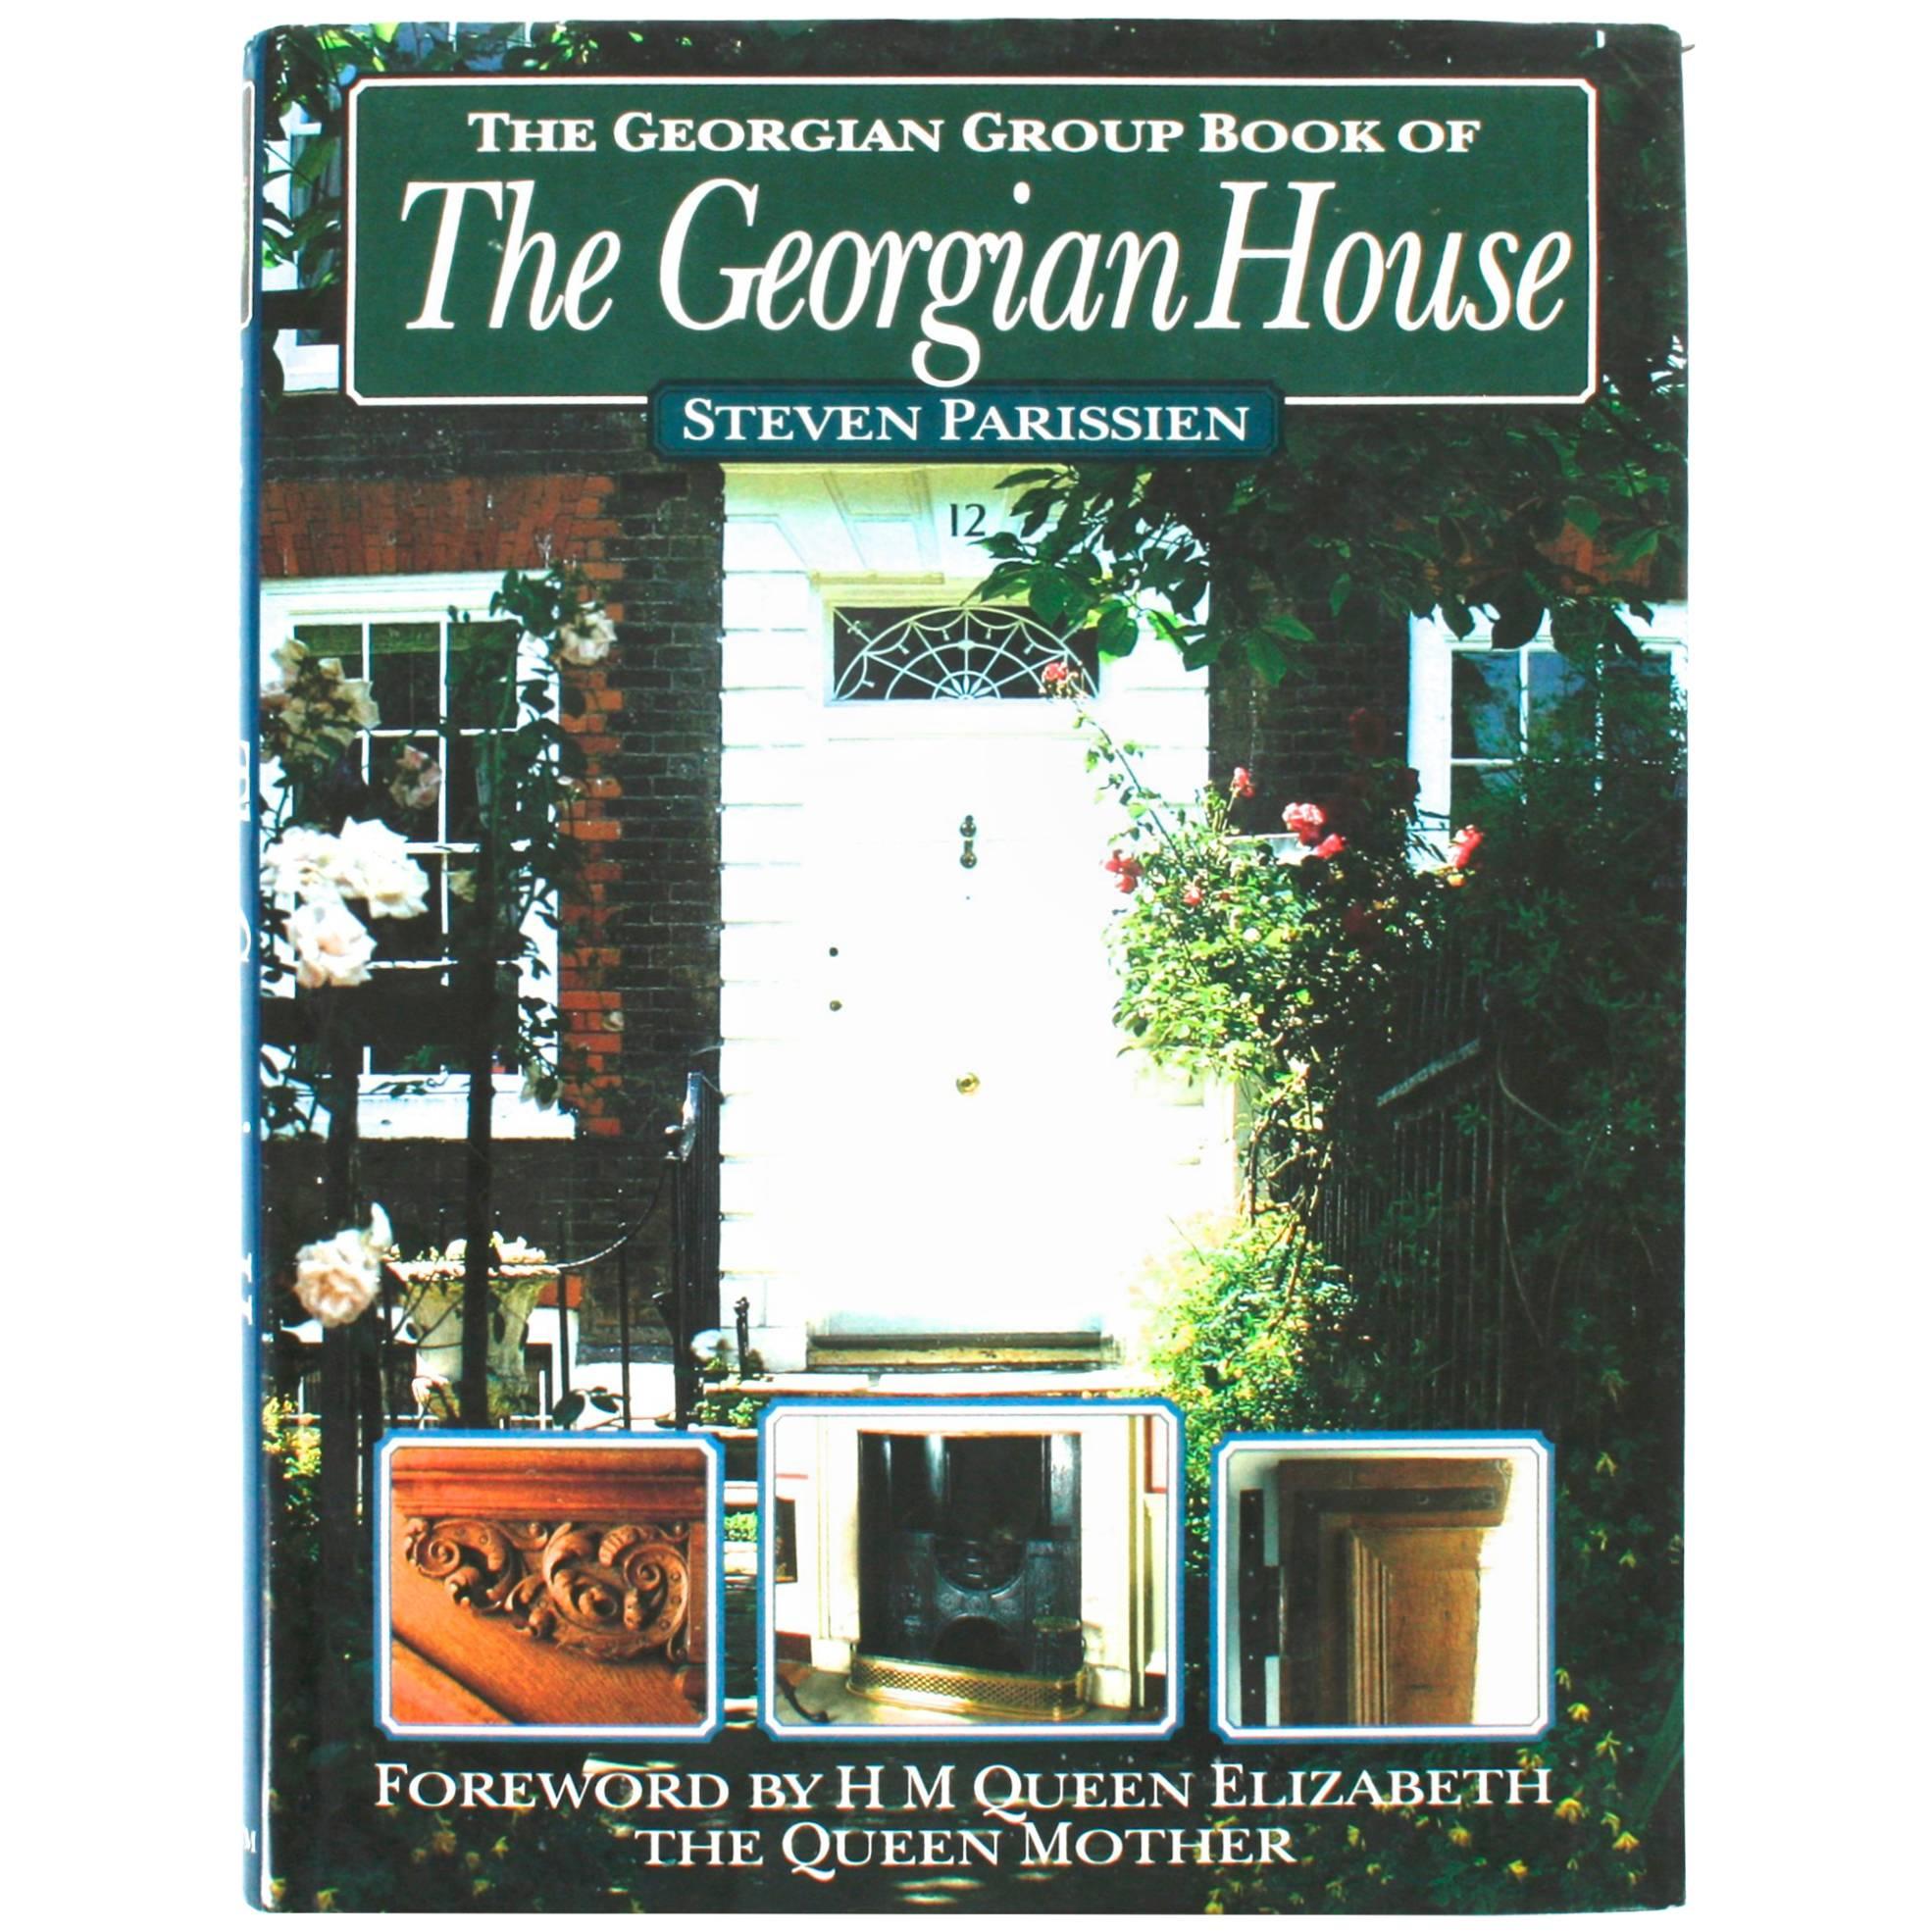 The Georgian House by Steven Parissien